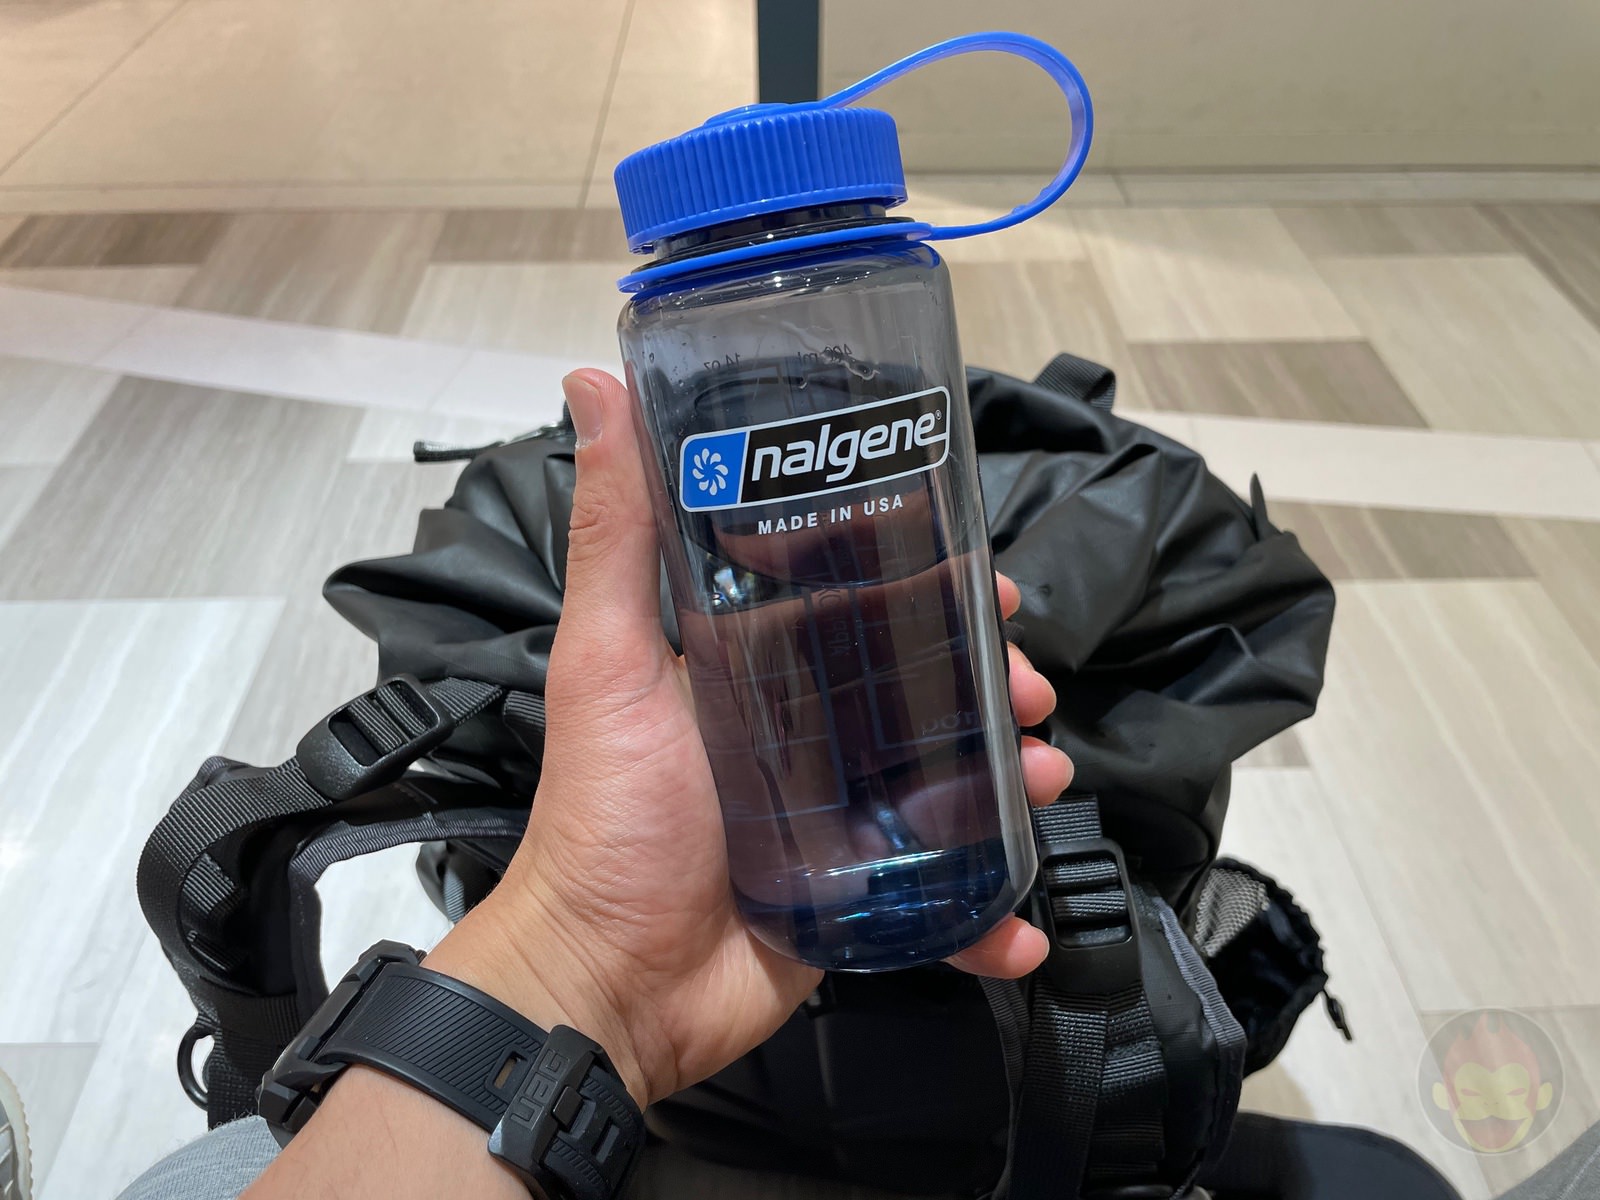 nalgene-water-bottle-review-06.jpg